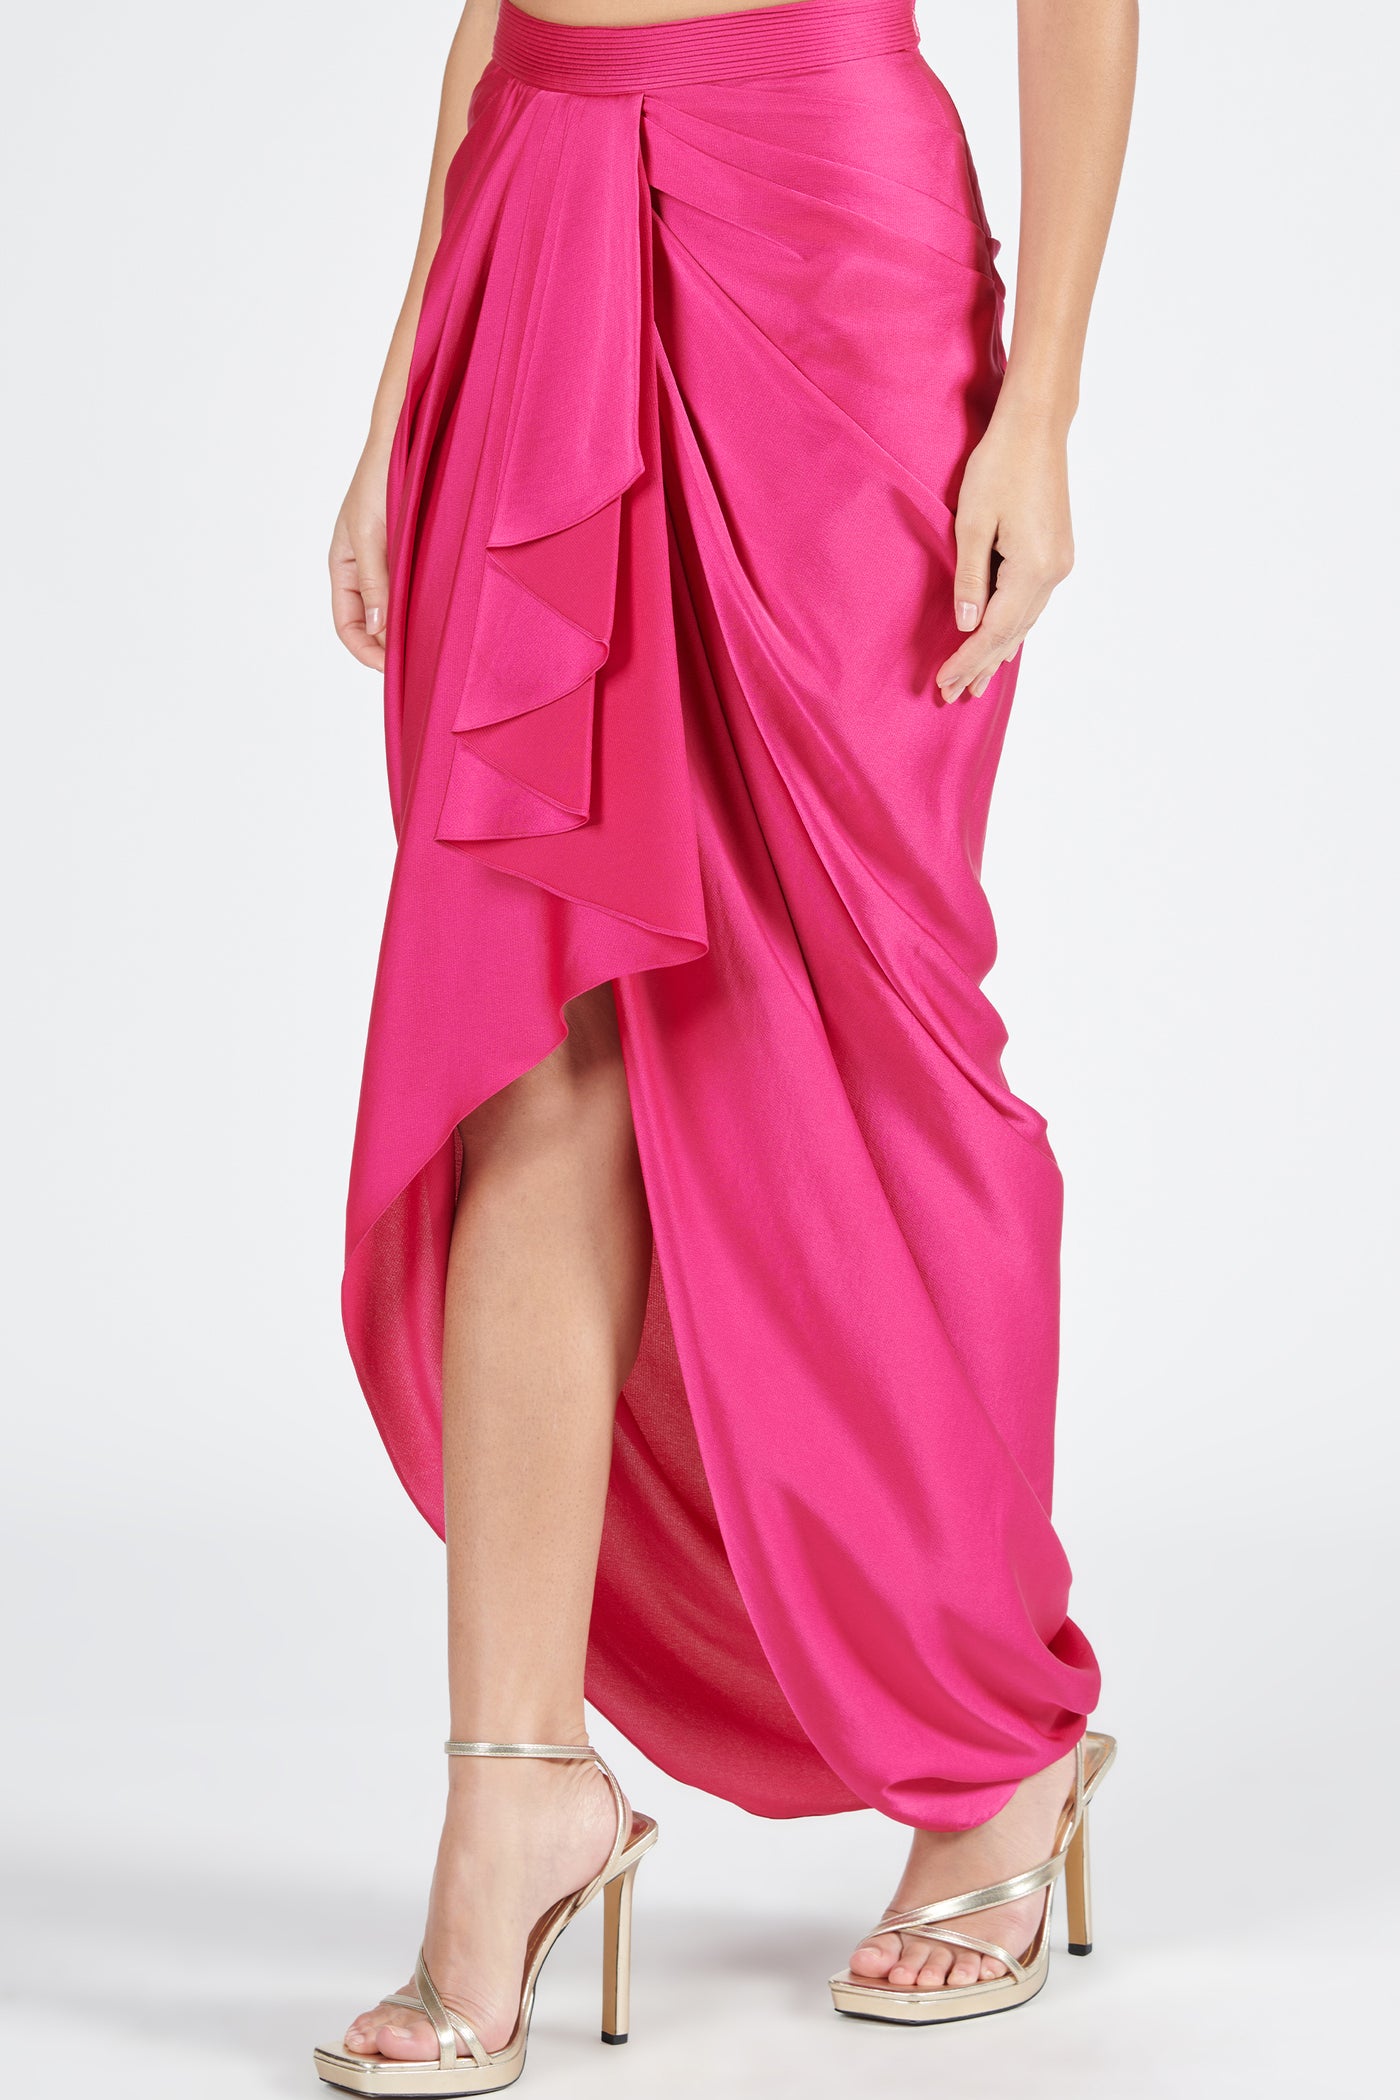 Shantanu & Nikhil Pink Asymmetric Draped Skirt indian designer wear online shopping melange singapore